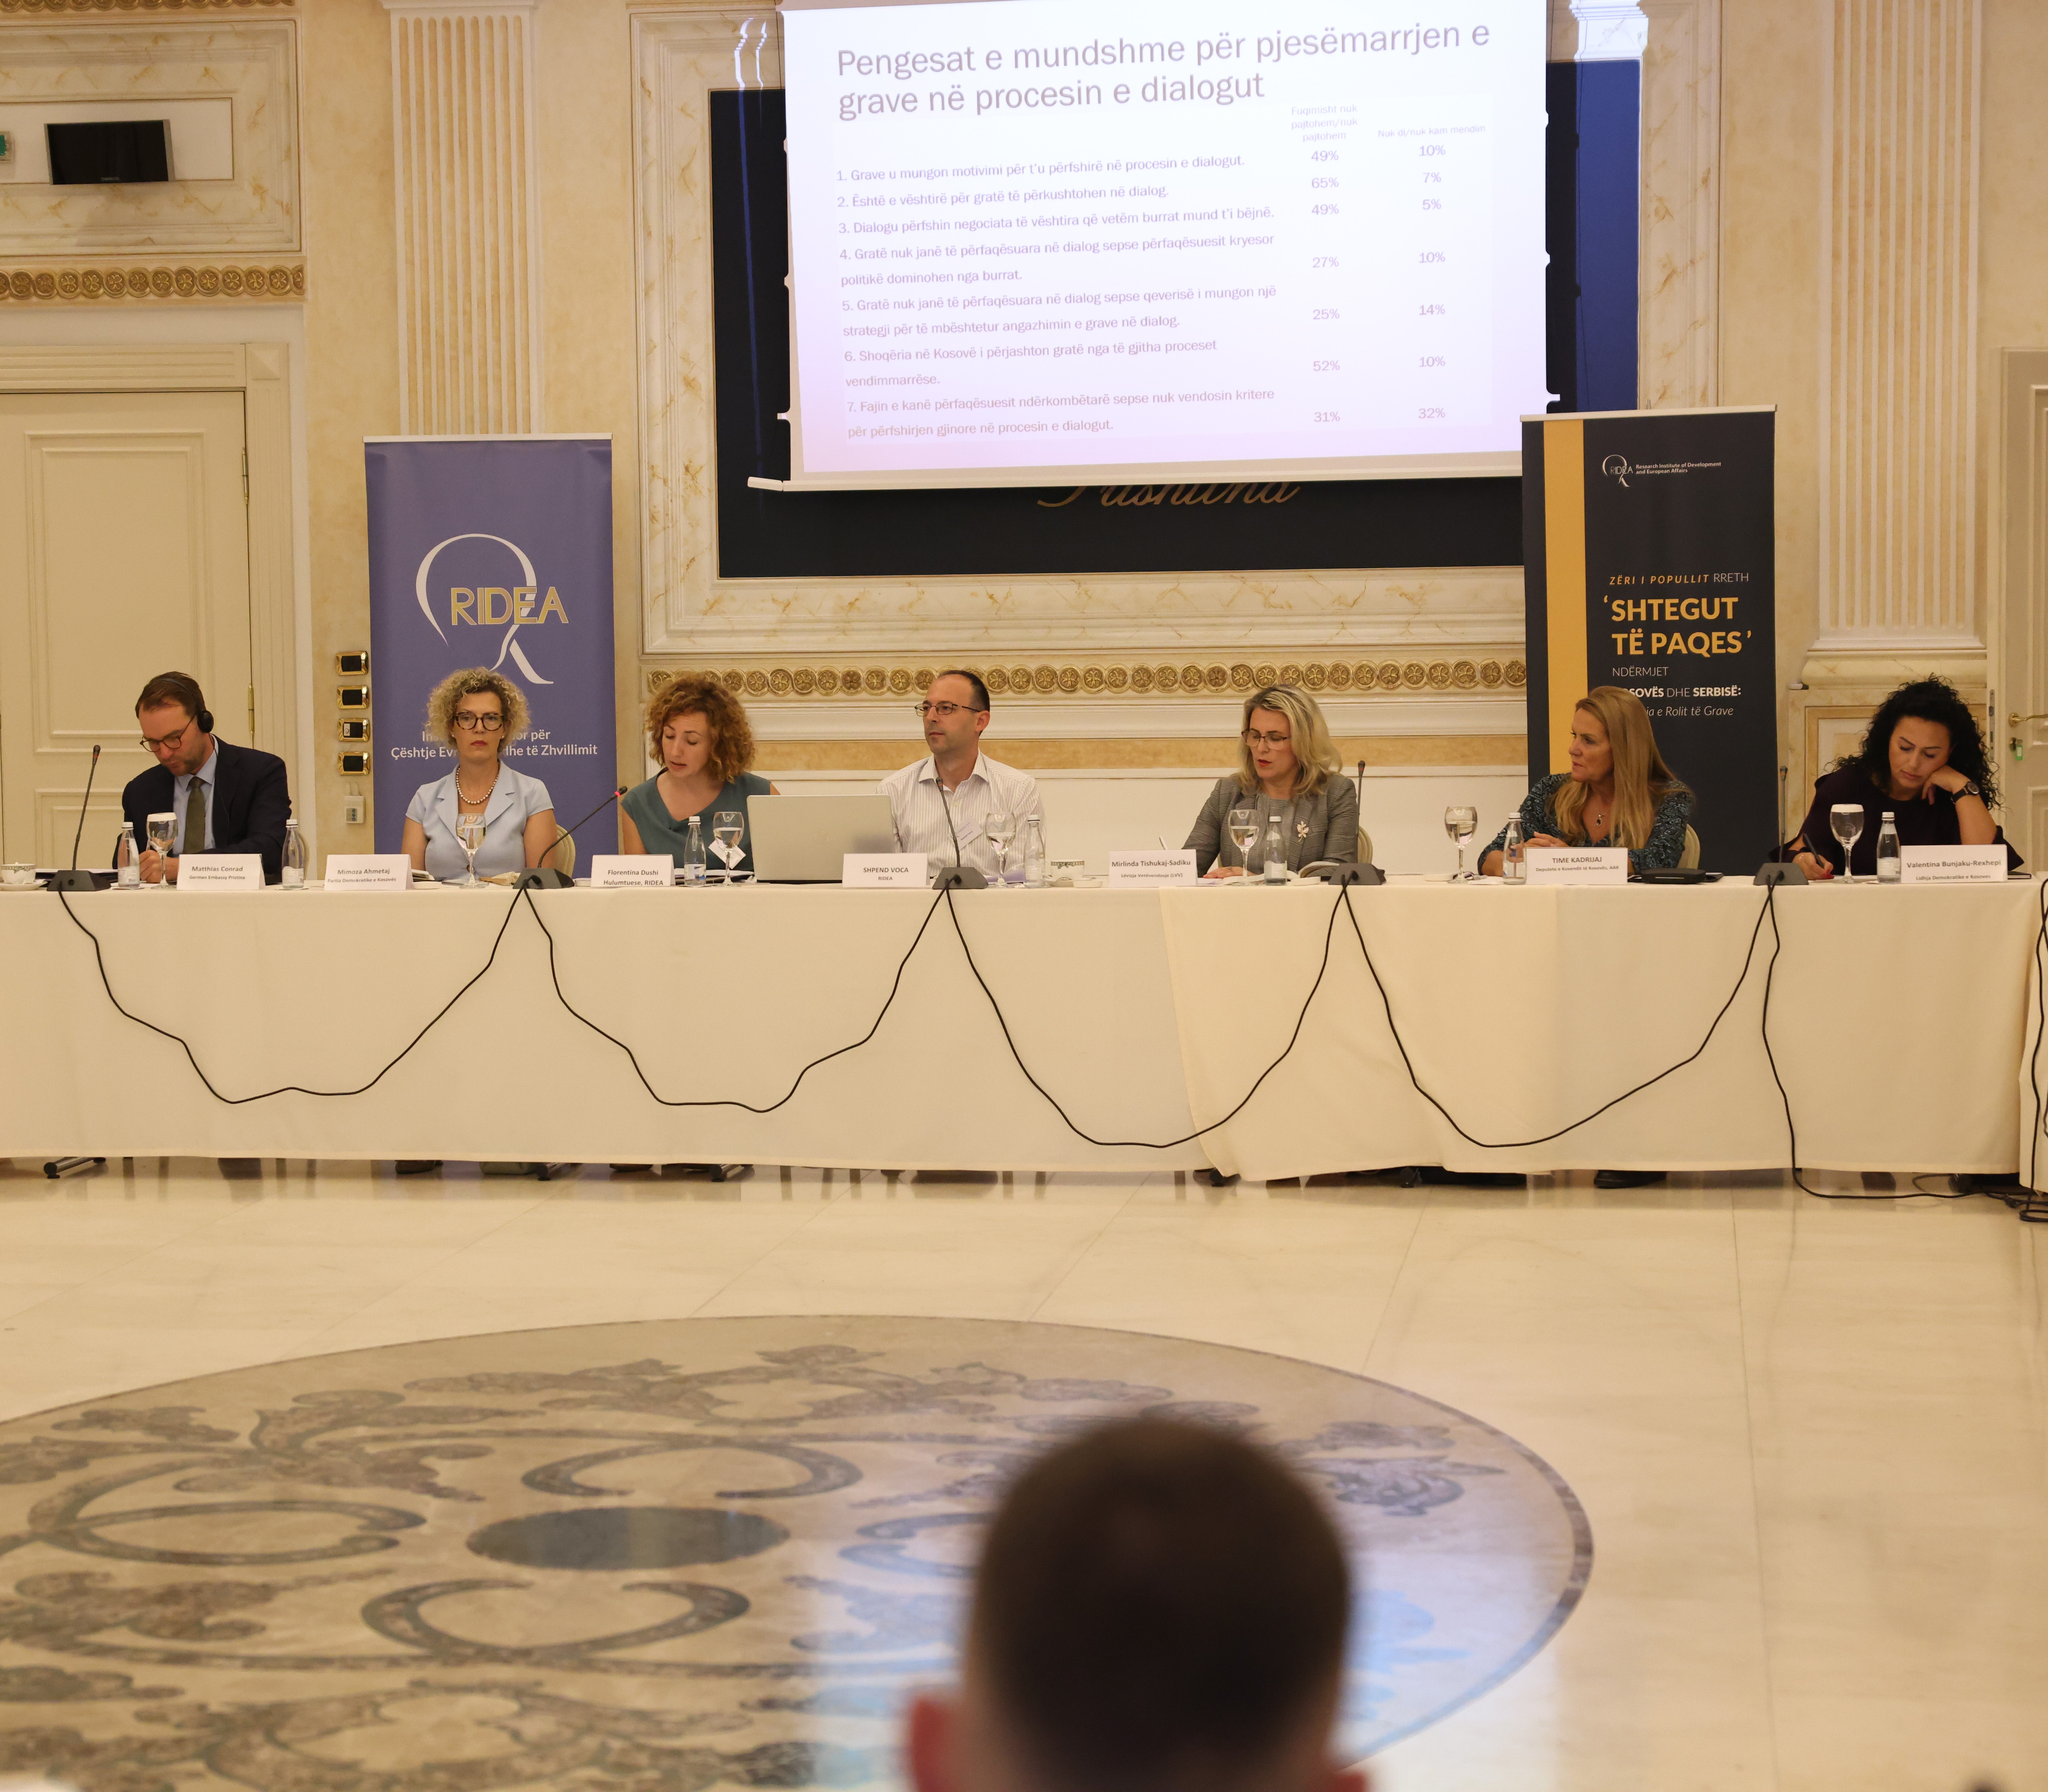 RIDEA Organizoi Konferencë për Studimin/Raportin e ri - Zëri i Popullit rreth ‘Shtegut të Paqes’ ndërmjet Kosovës dhe Serbisë: Shpalosja e Rolit të Grave-